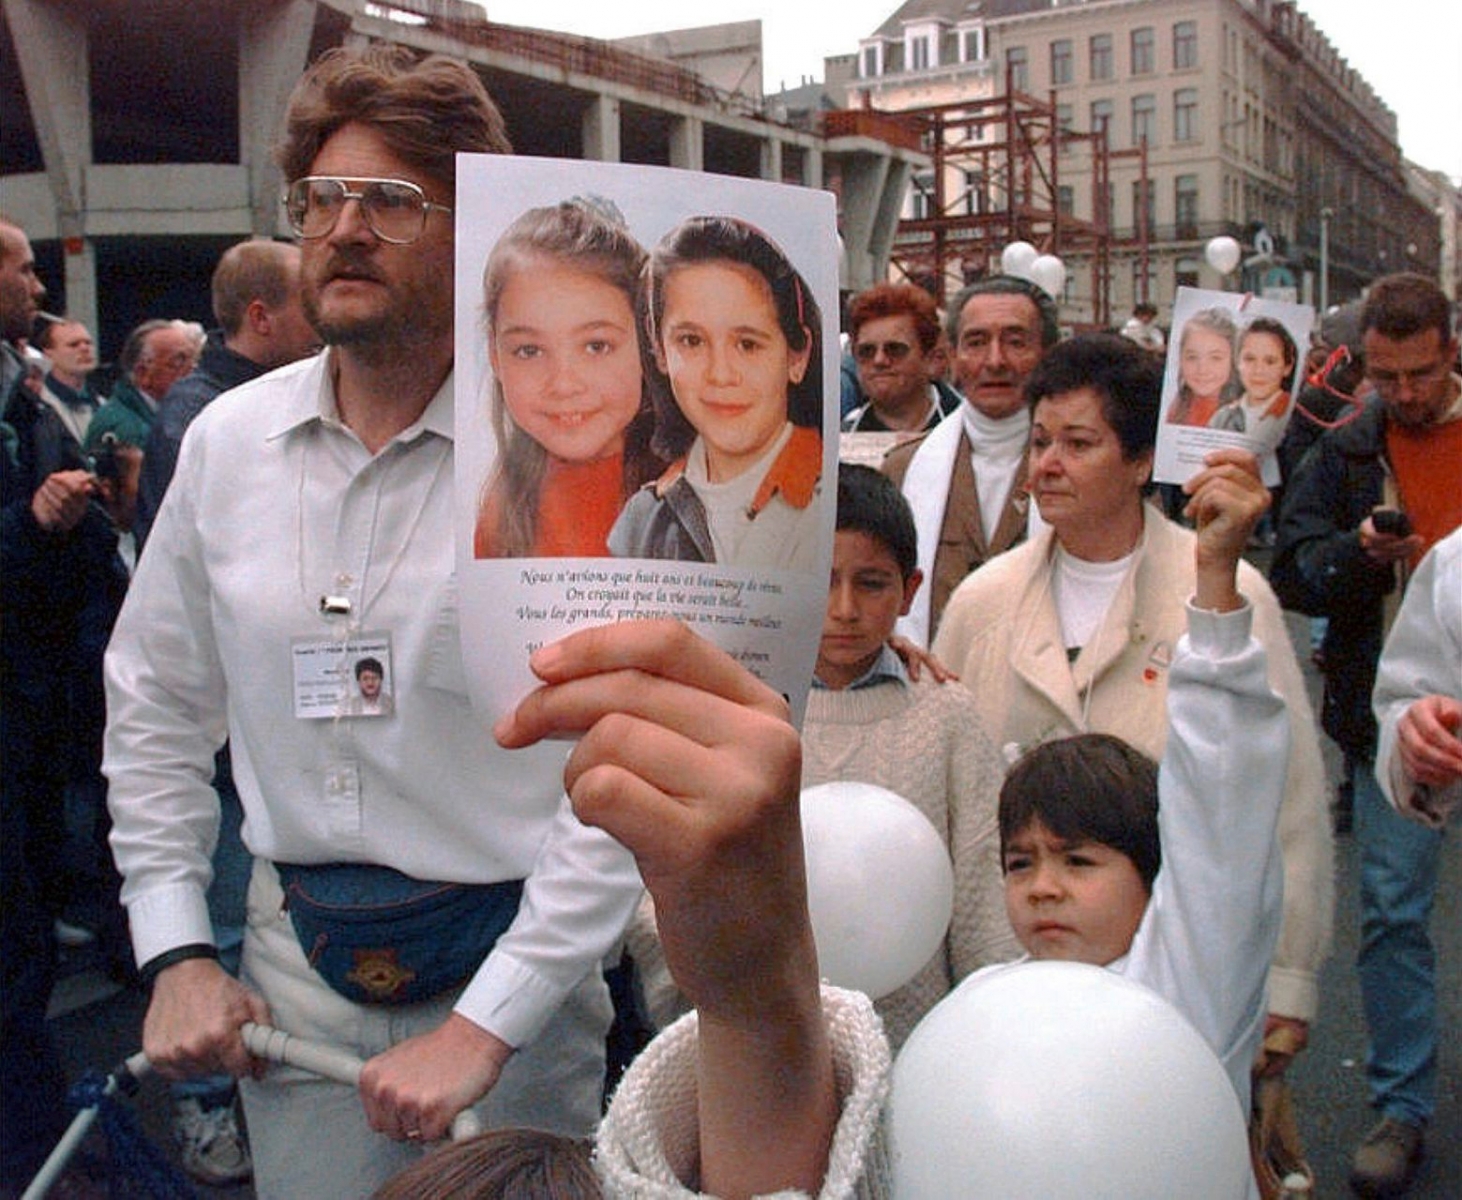 Bilder von Julie und Melissa, zwei der Opfer des belgischen Kinderschaenders Marc Dutroux, werden am 20. Oktober 1996 bei einer Grossdemonstration in Bruessel gezeigt. (KEYSTONE/EPA/BELGA/Morin) BELGIEN AFFAERE DUTROUX WEISSER MARSCH